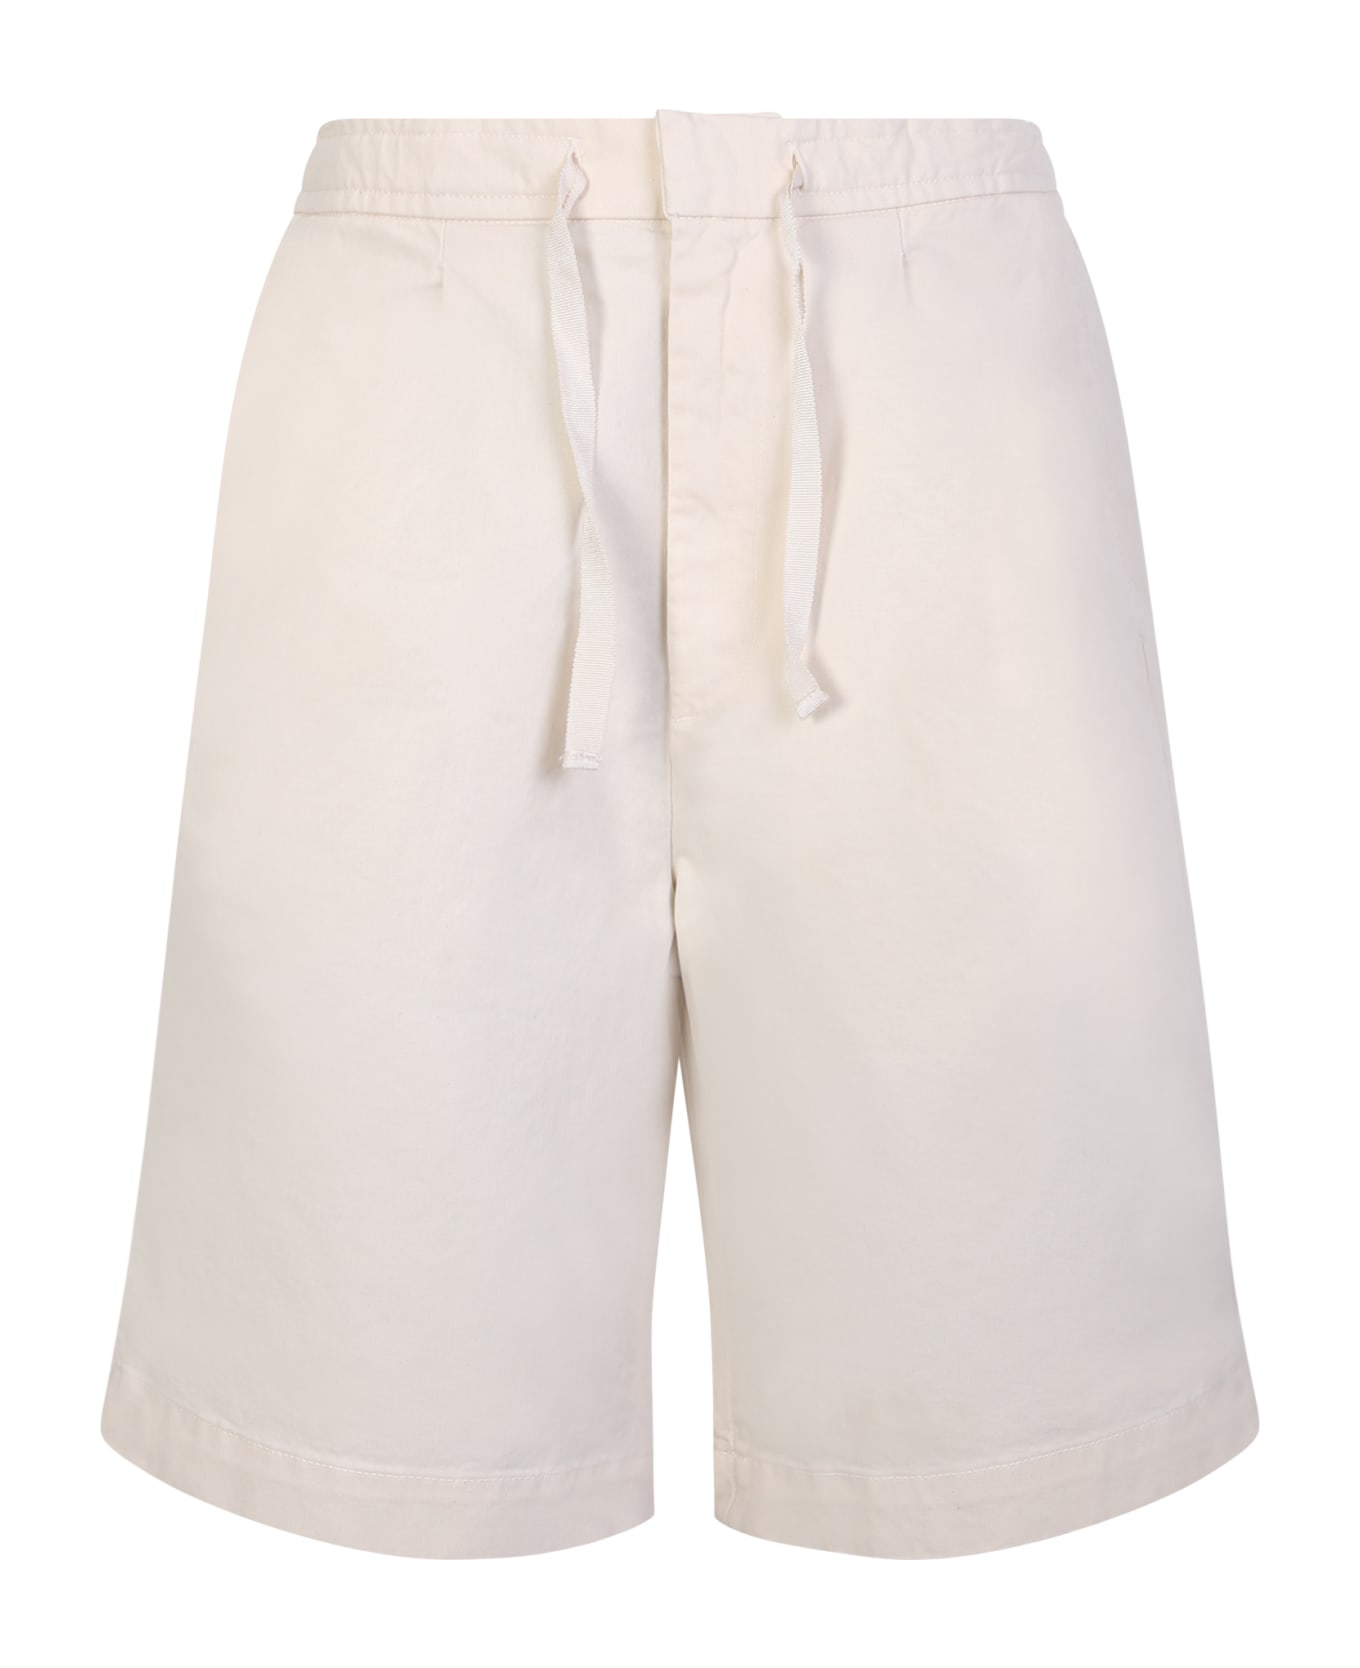 Officine Générale Light Beige Cotton Shorts - Beige